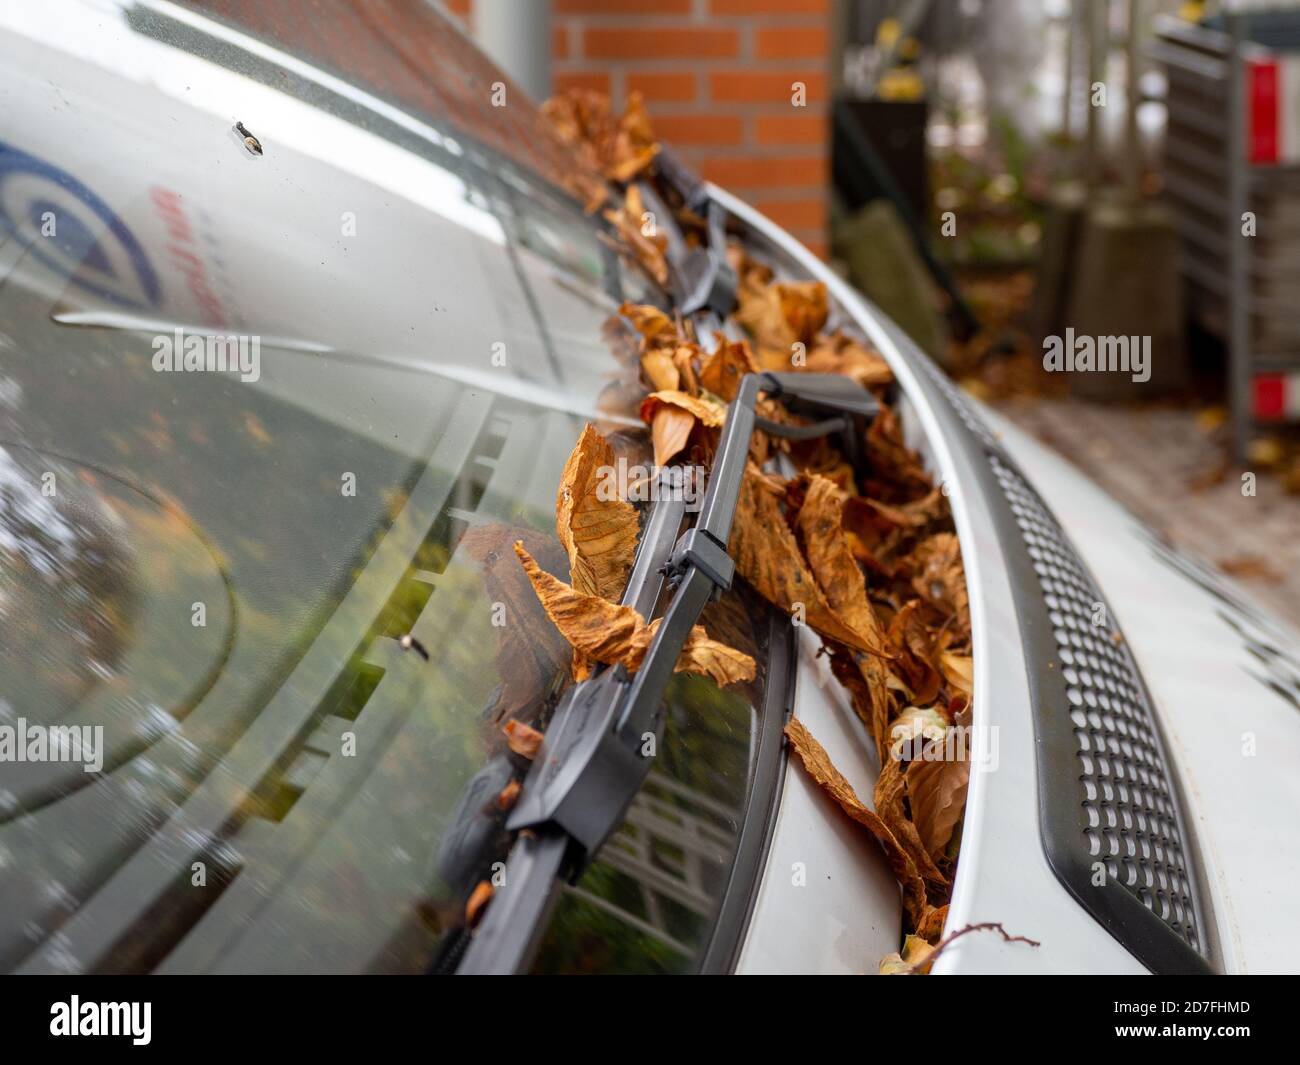 Windschutzscheibenwischer verschmutztes Auto von getrocknetem Schmutz auf  der Heckscheibe Stockfotografie - Alamy